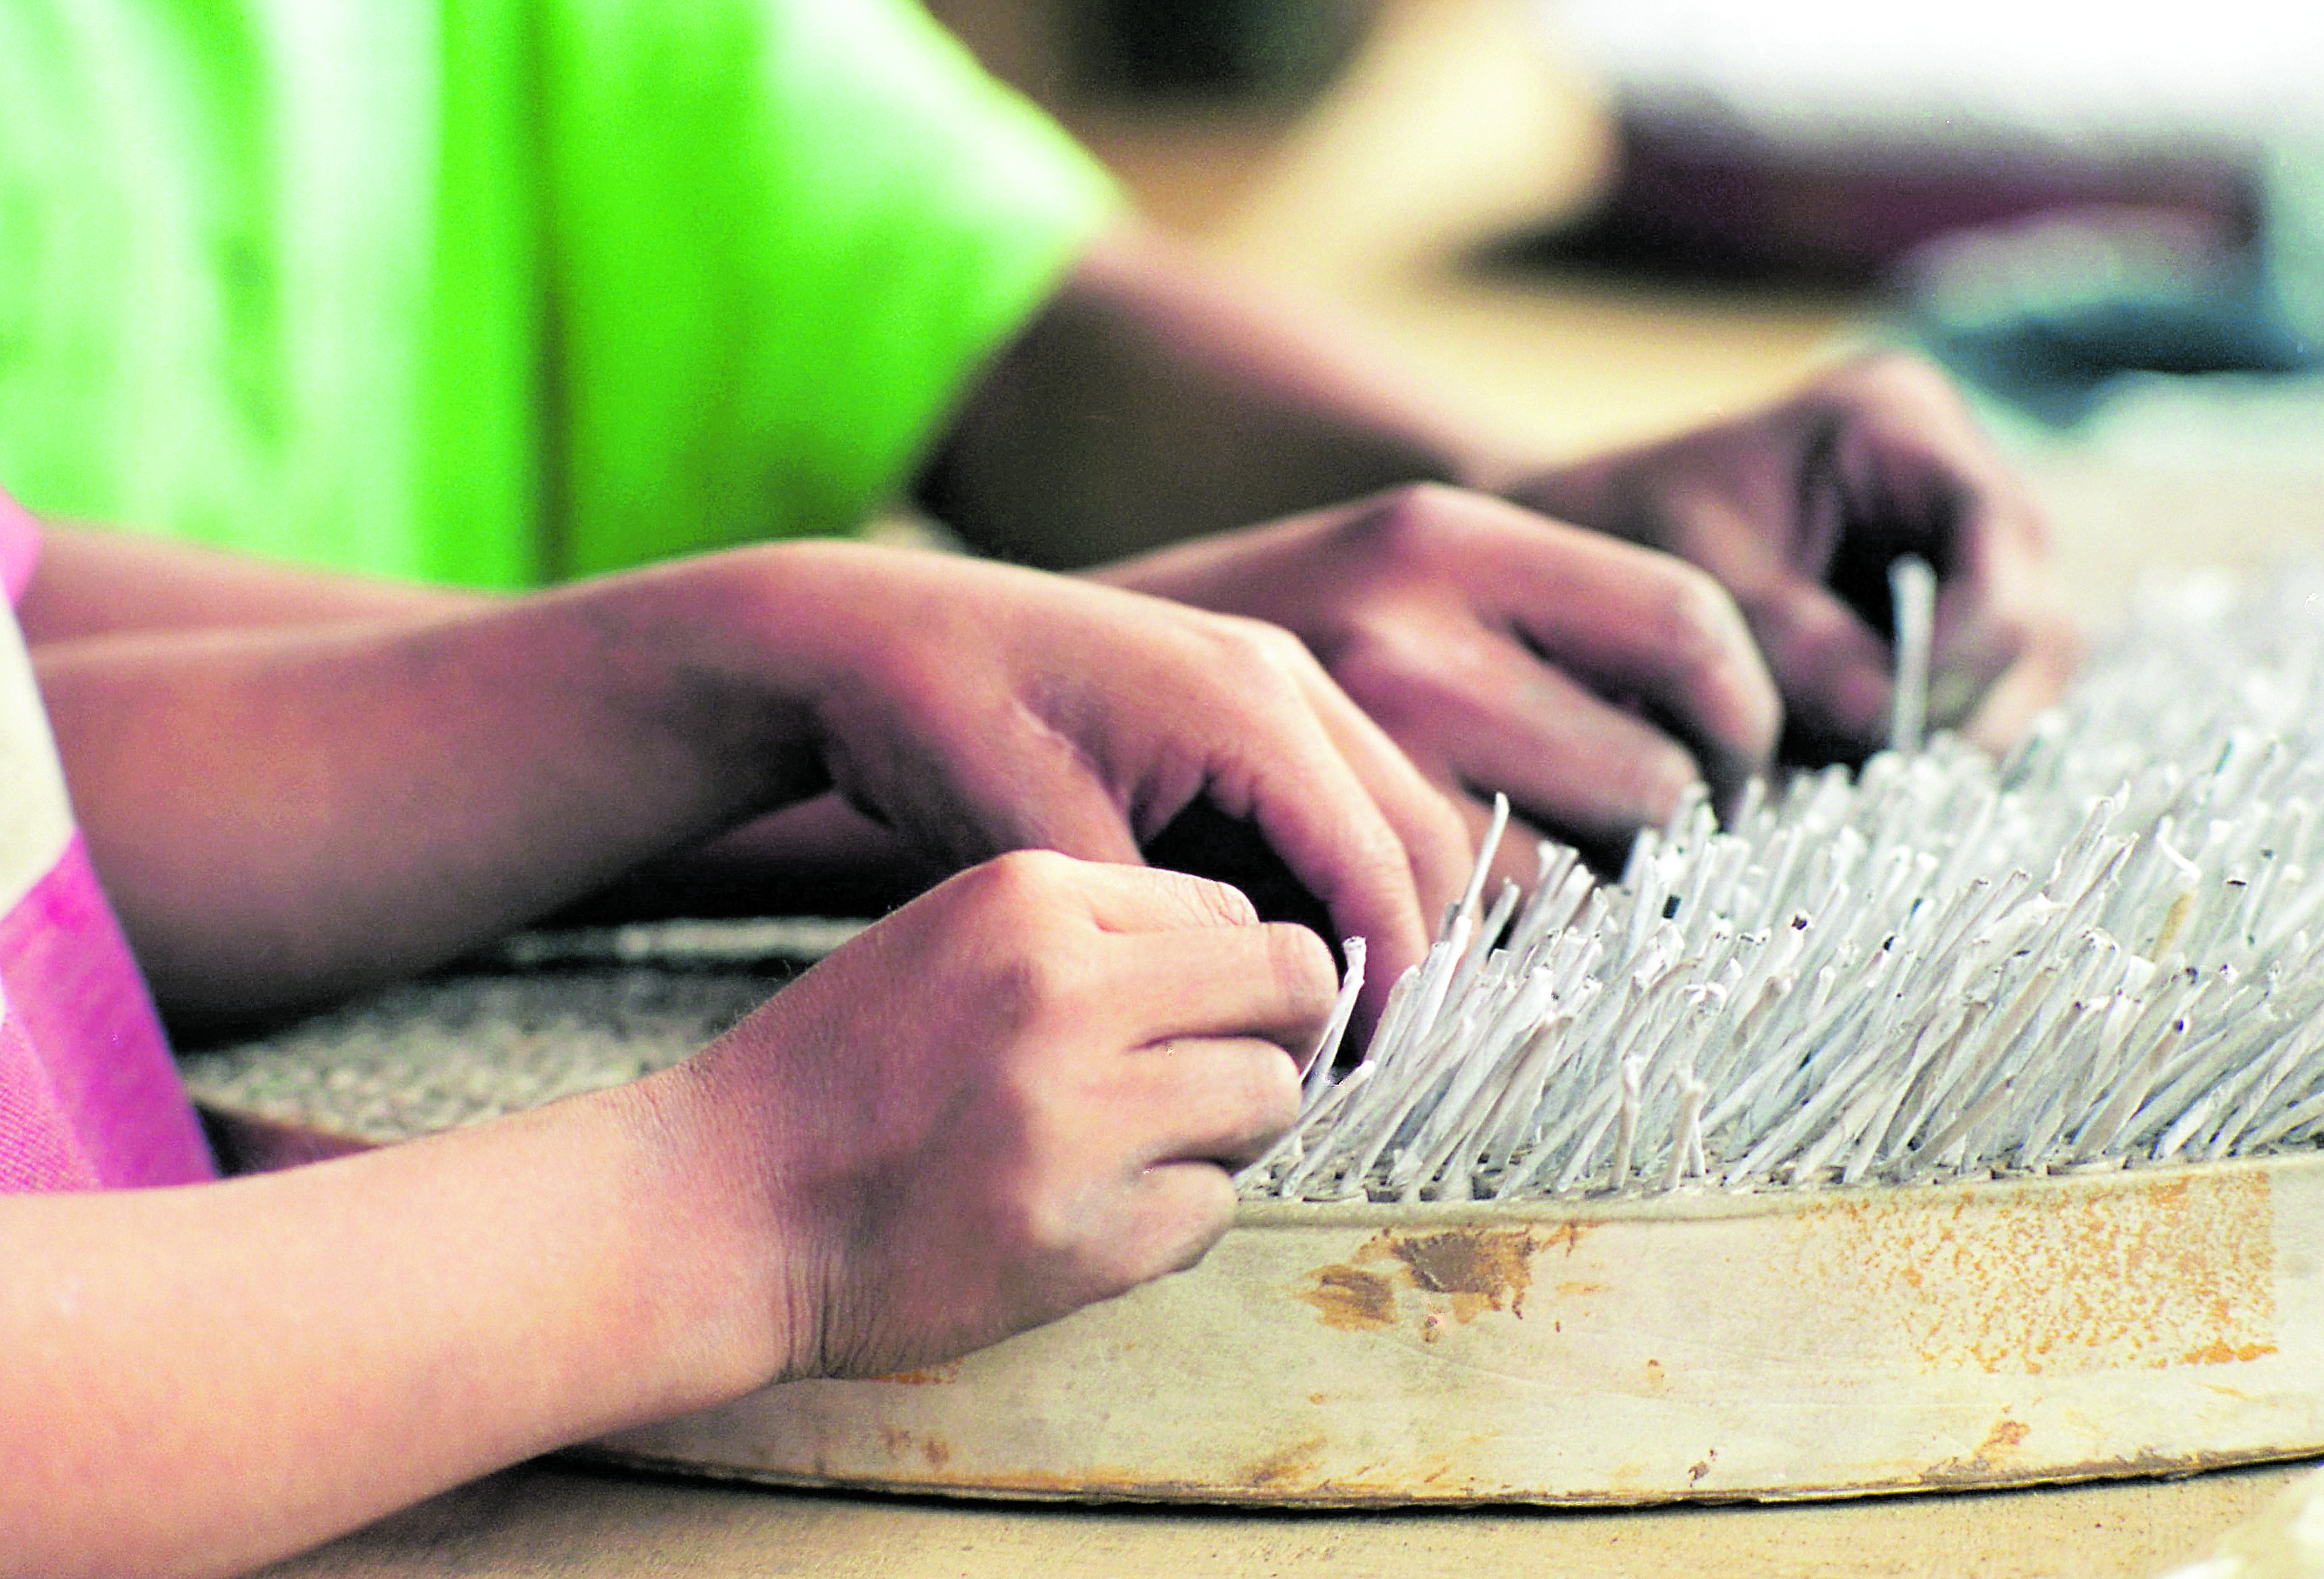 El trabajo infantil es un problema que Guatemala no ha podido frenar, en el 2018 se reportaban 396 mil 479 niños en alguna actividad laboral. (Foto Prensa Libre: Hemeroteca PL)